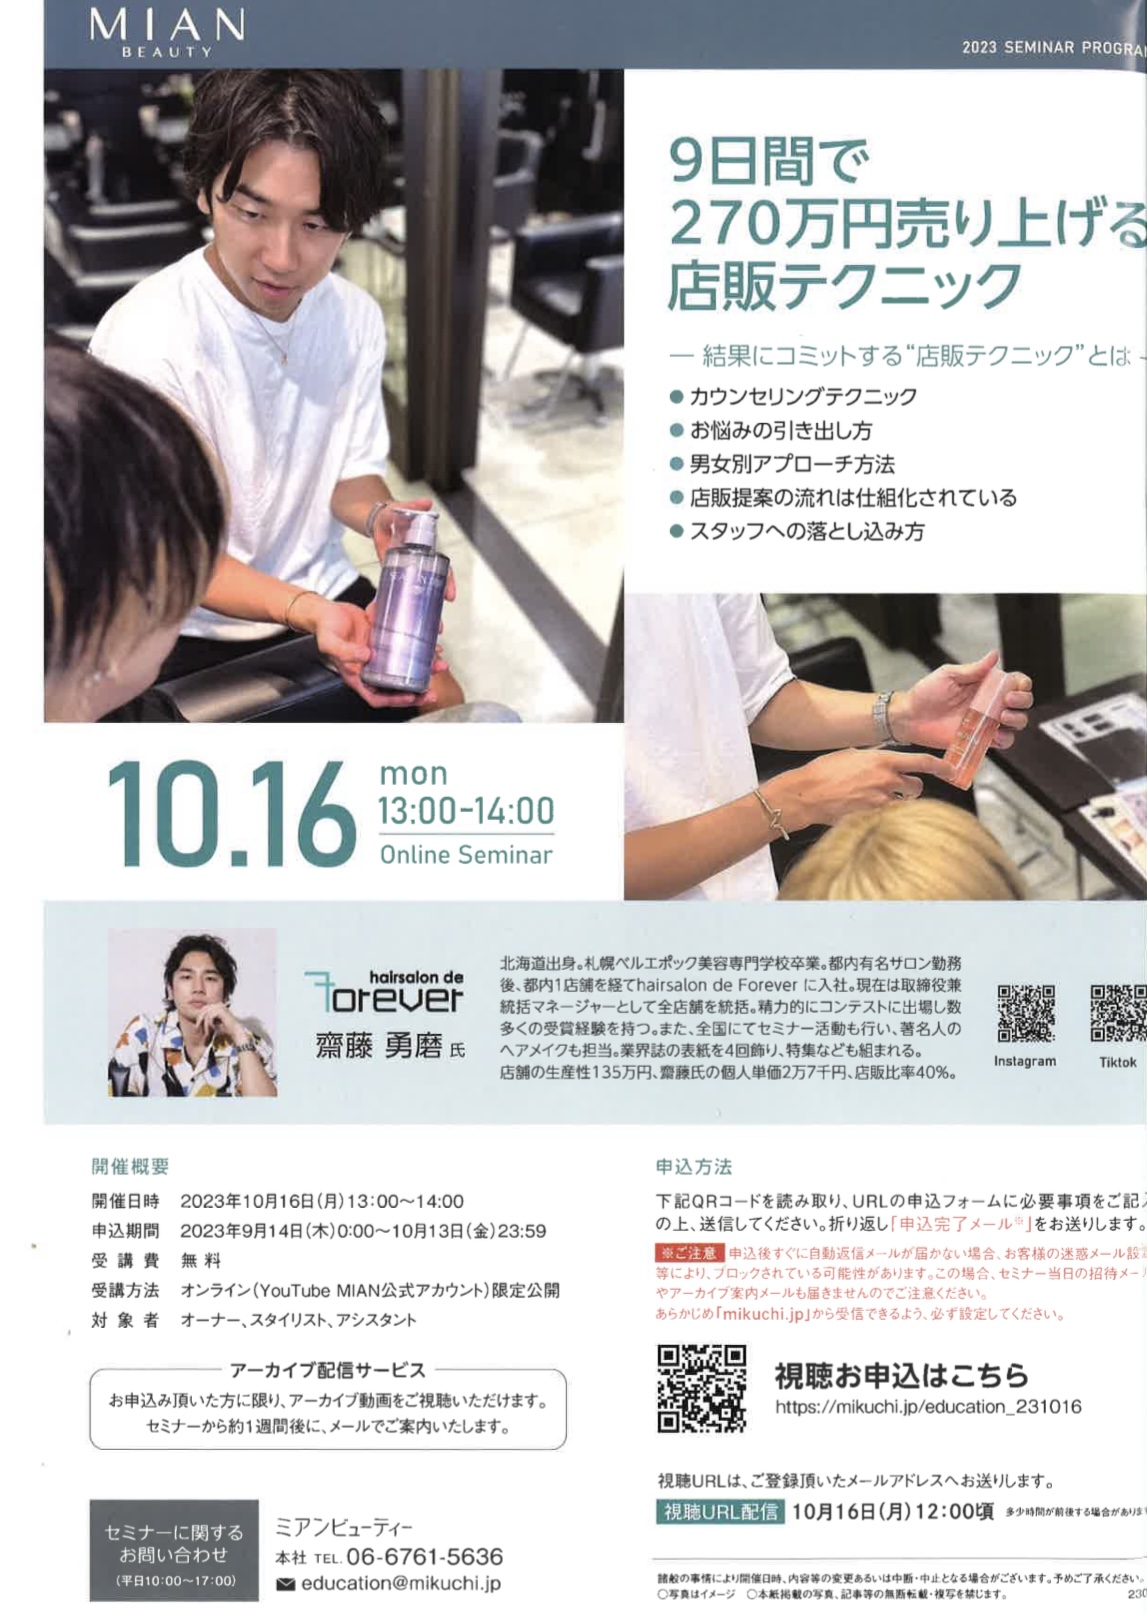 10月16日ミアンビューティ 9日間で270万円売り上げる店販テクニック